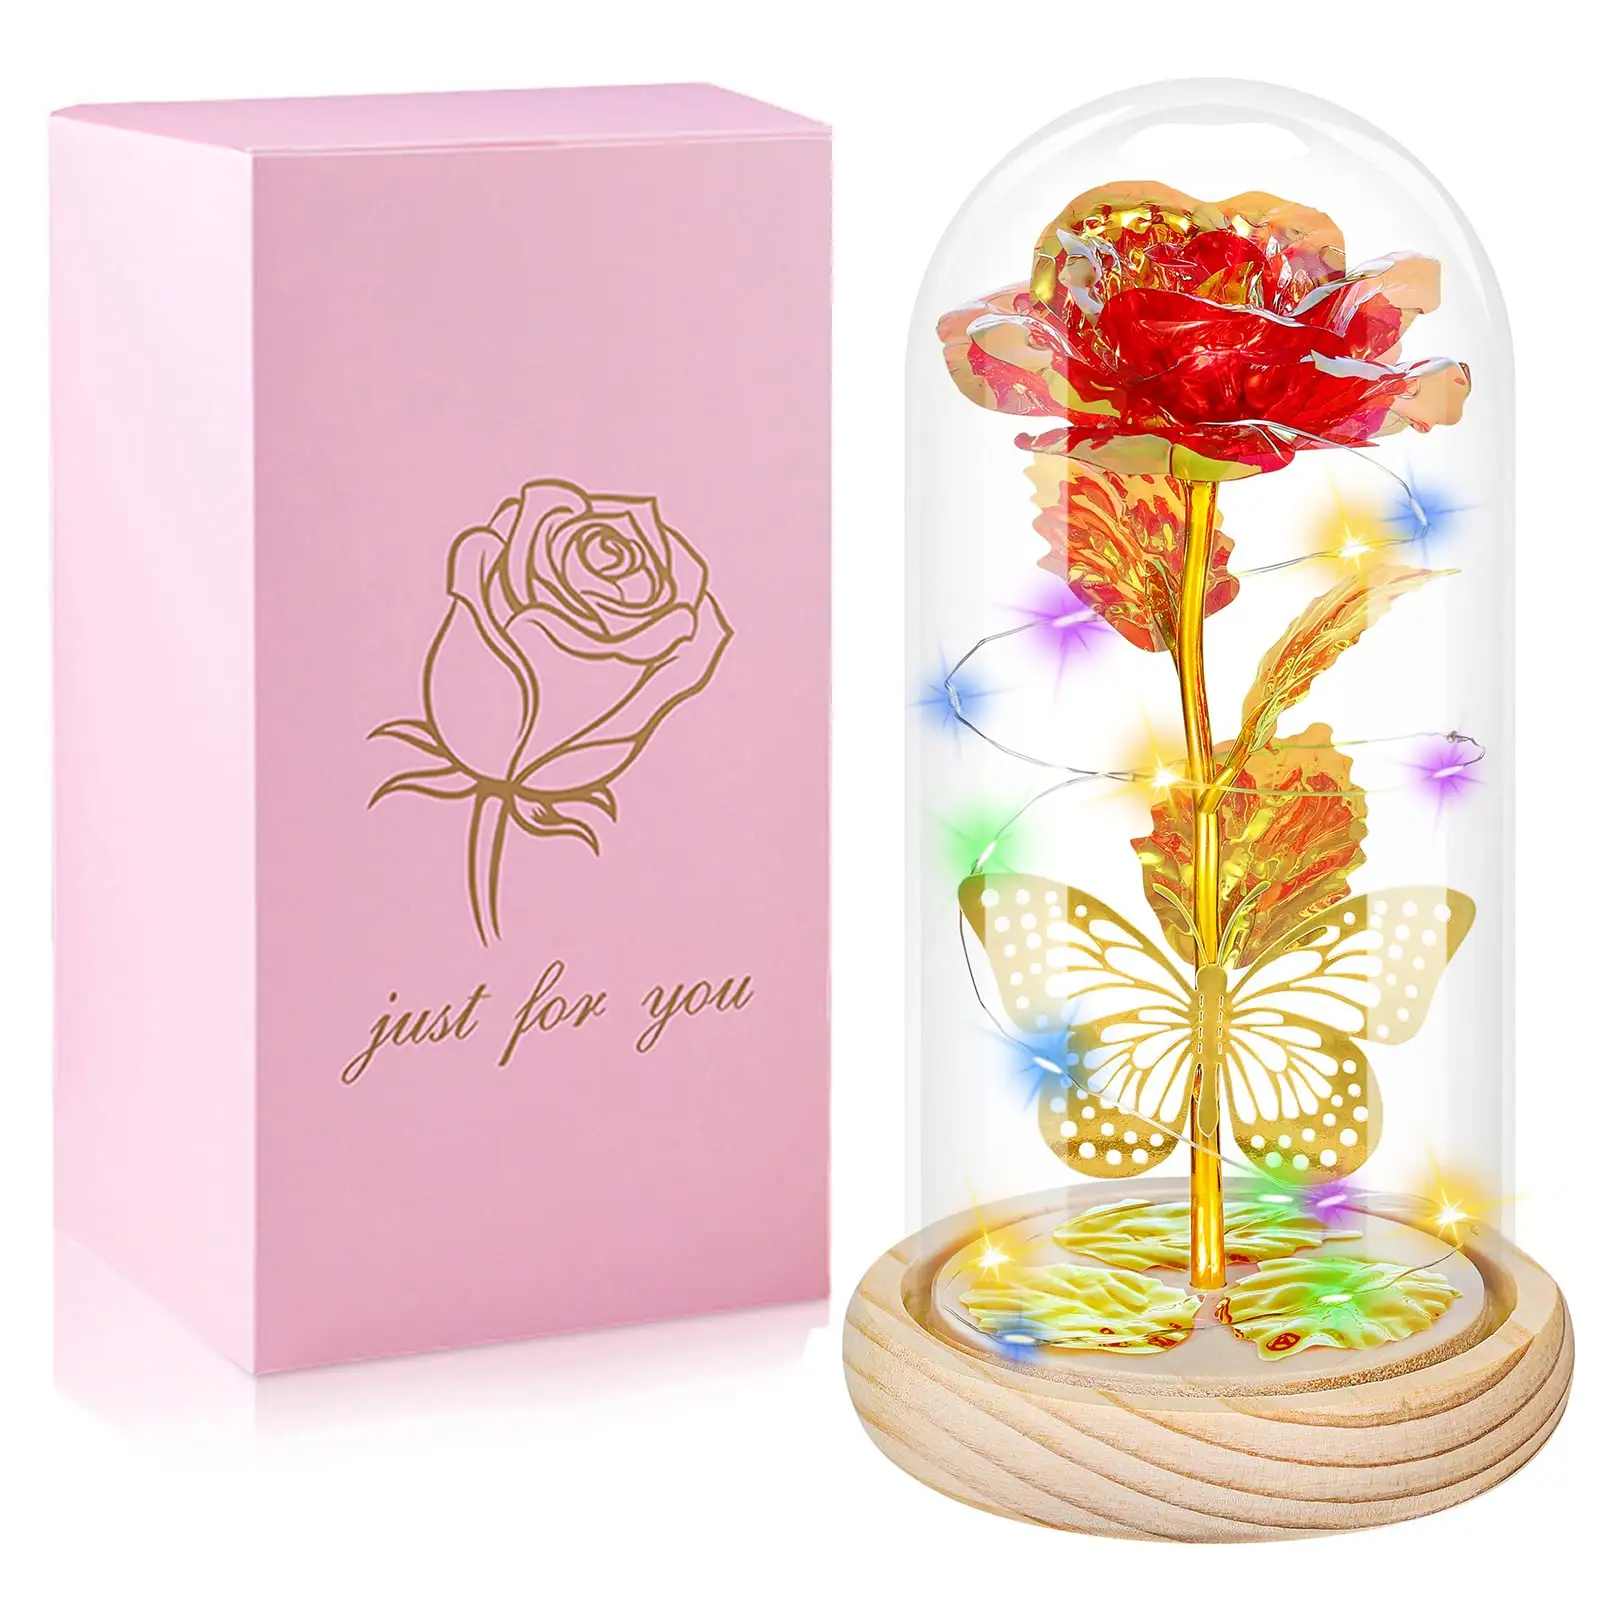 ギフトアイテム女性のお母さんのためのガラスのバラの花の誕生日プレゼント彼女はピンクのパッケージが付属していますギフトボックスはギフトのアイデアをカスタマイズします